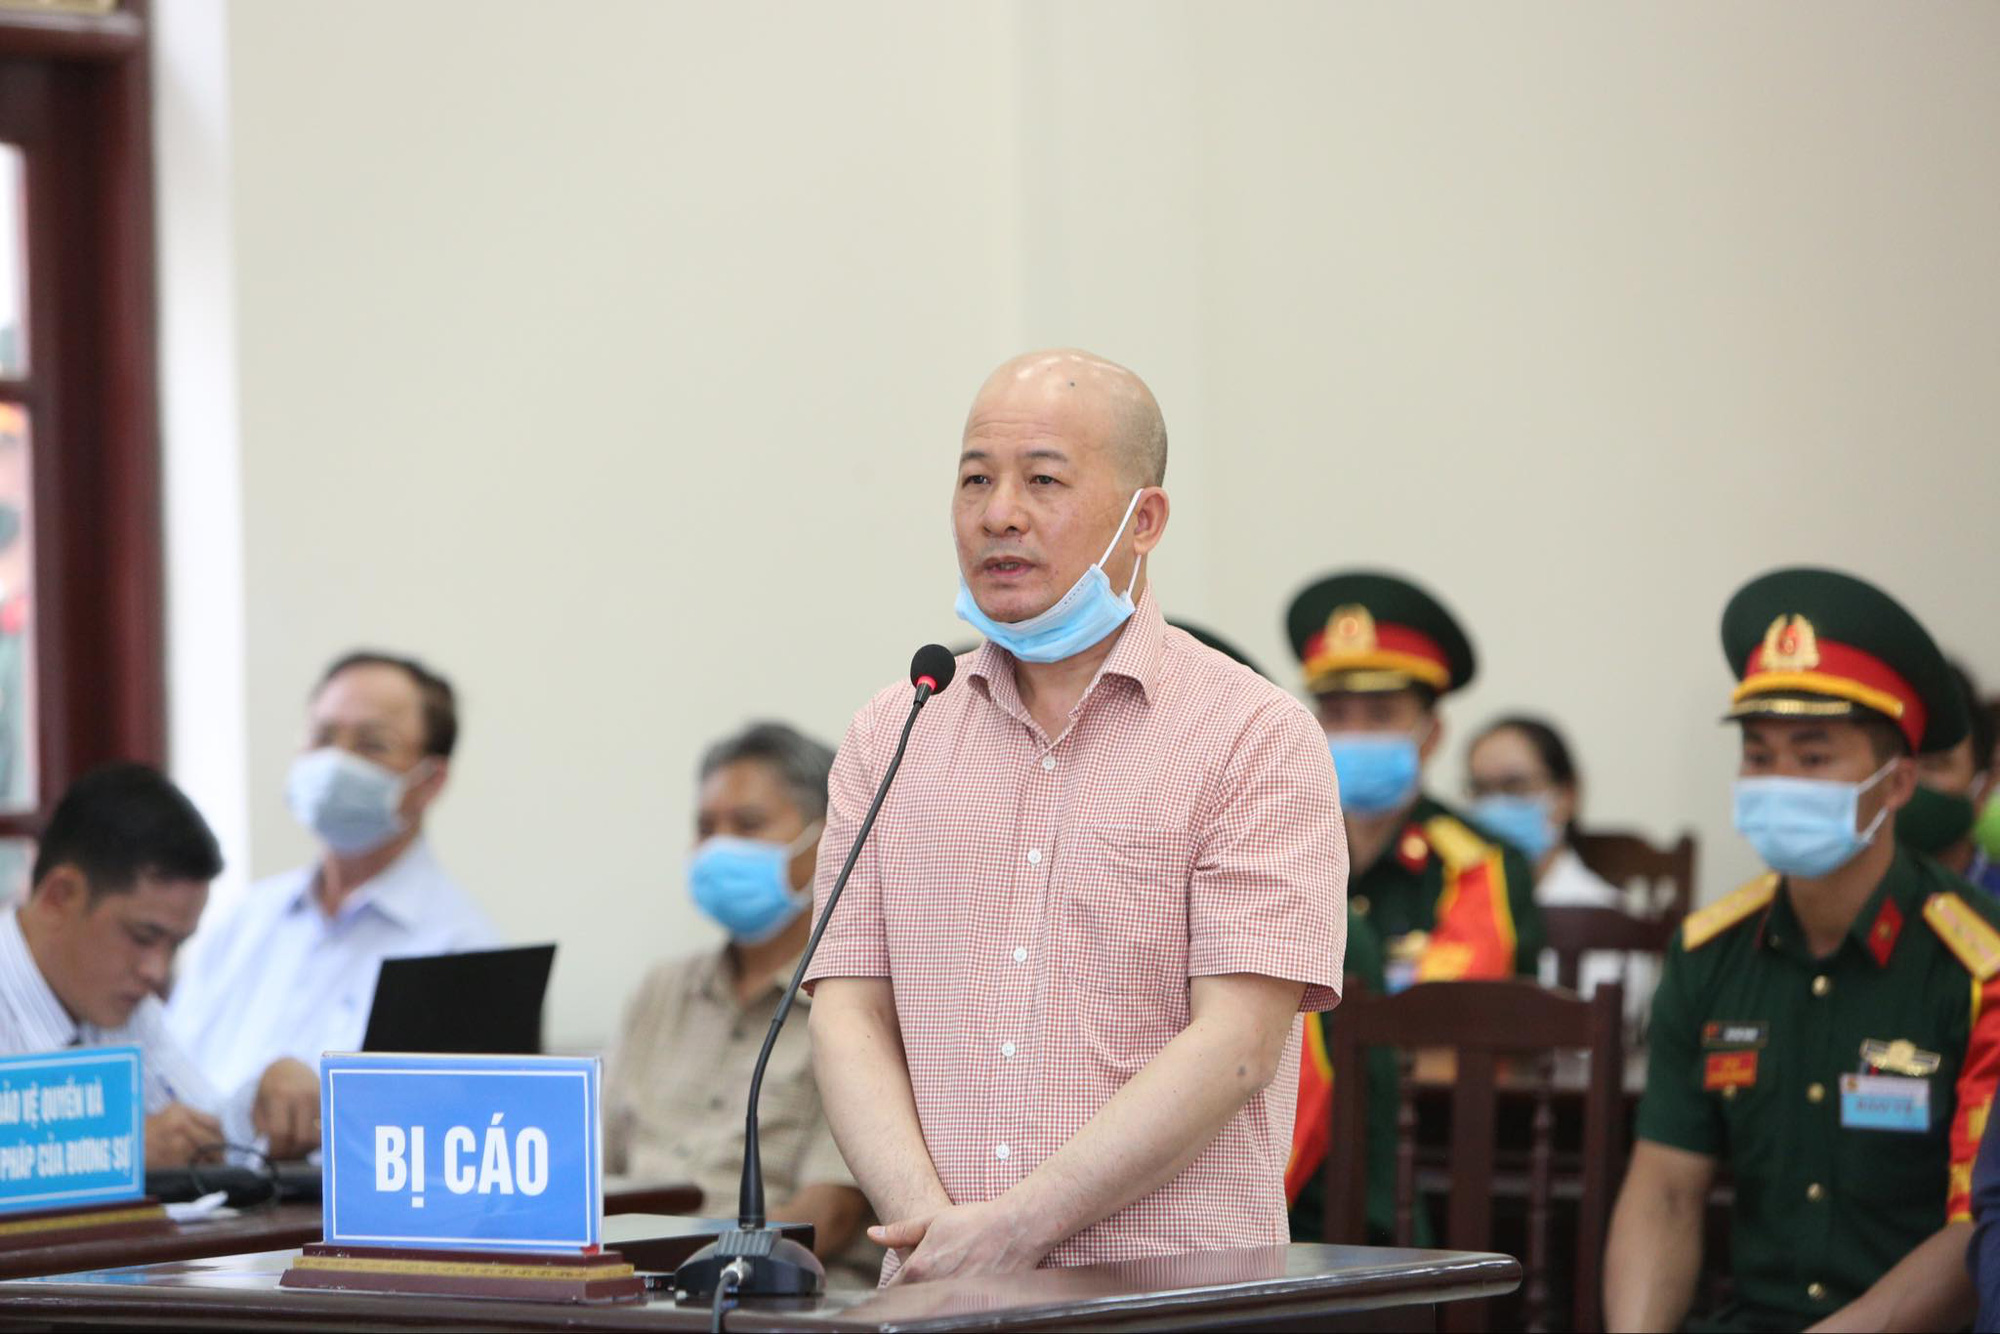 Cựu Thứ trưởng Nguyễn Văn Hiến và 4 đại tá ra tòa với những tình tiết giảm nhẹ nào? - Ảnh 2.